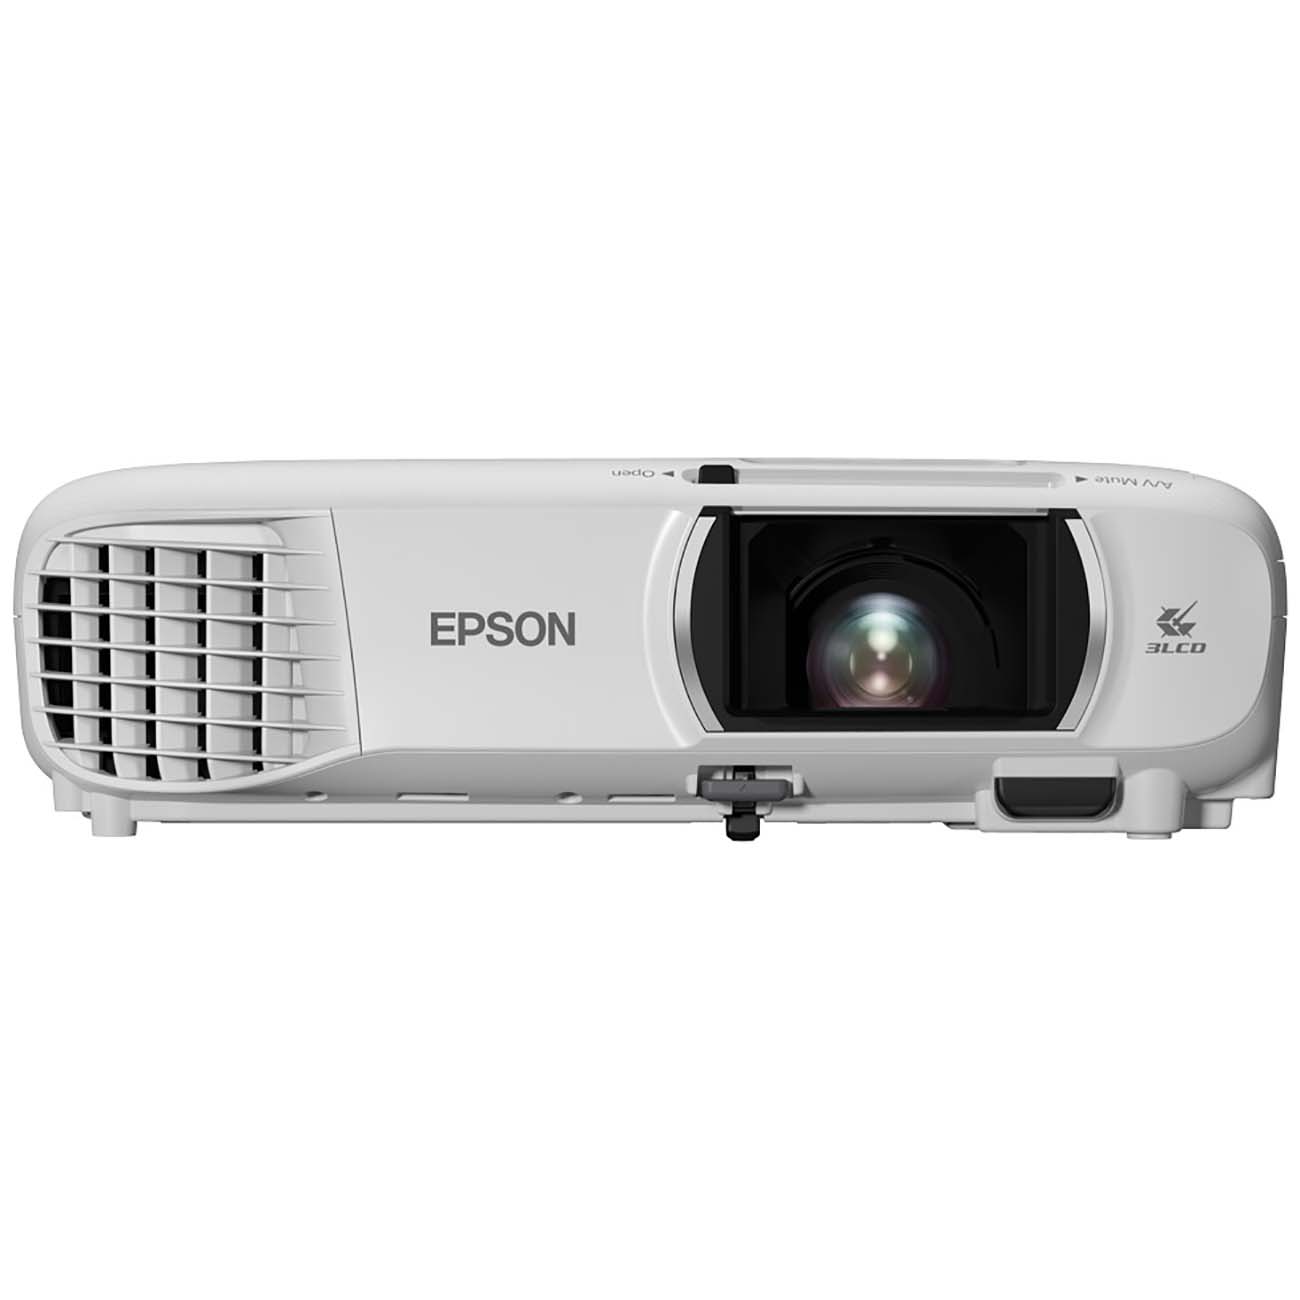 Проекторы для домашнего кинотеатра Epson EH-TW740 проектор epson eh ls300b v11ha07140